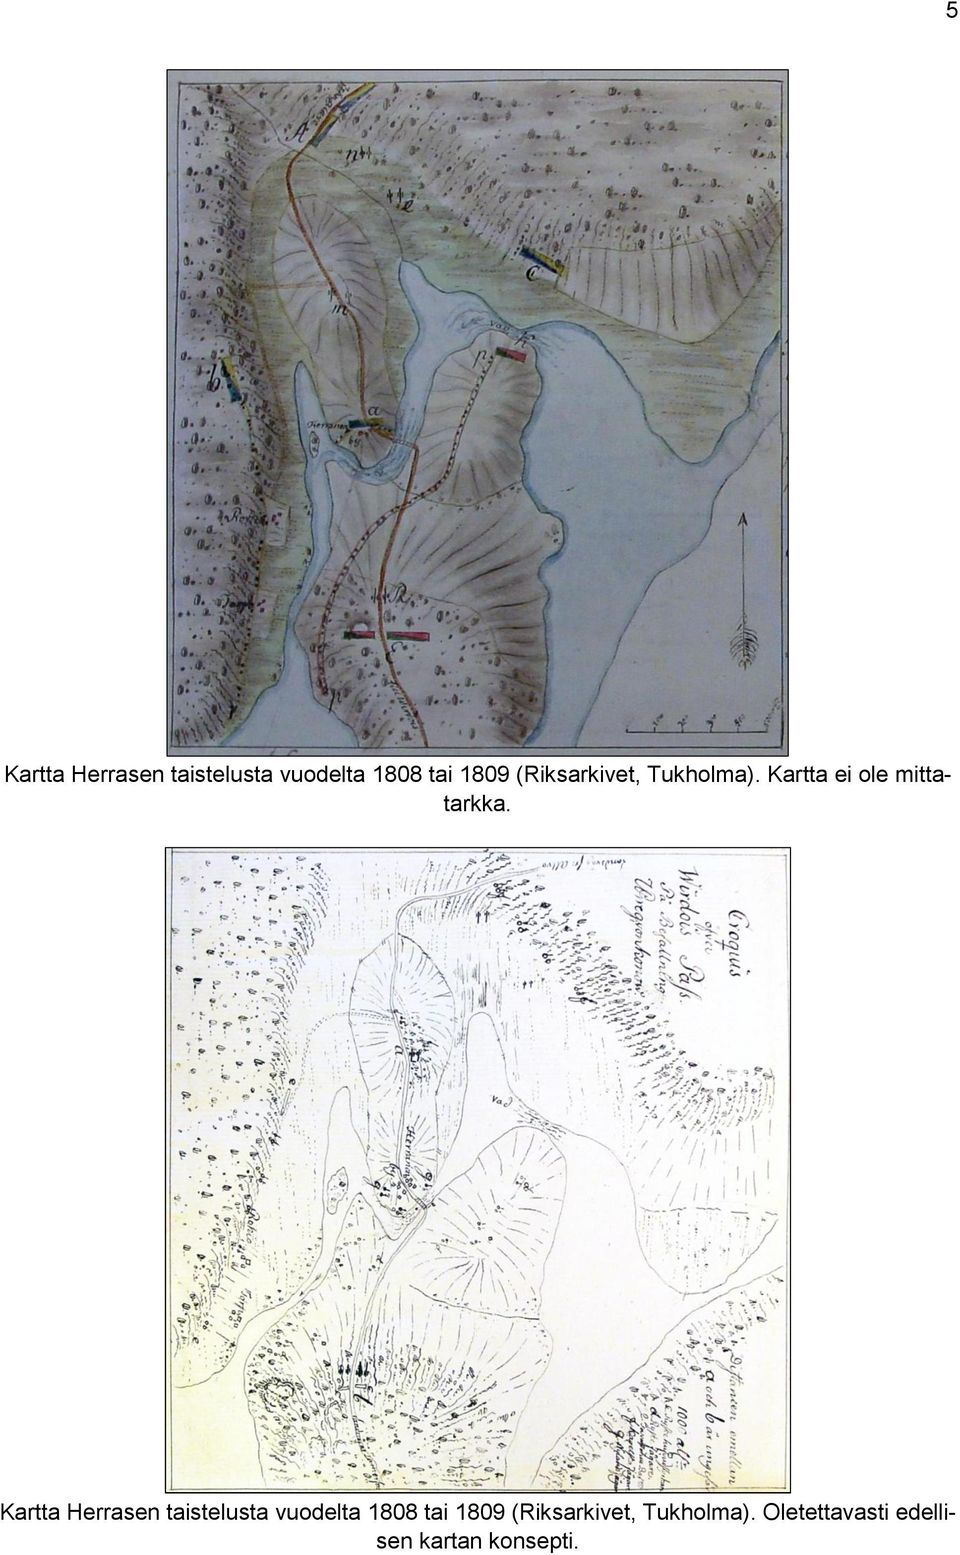 Kartta Herrasen taistelusta vuodelta 1808 tai 1809